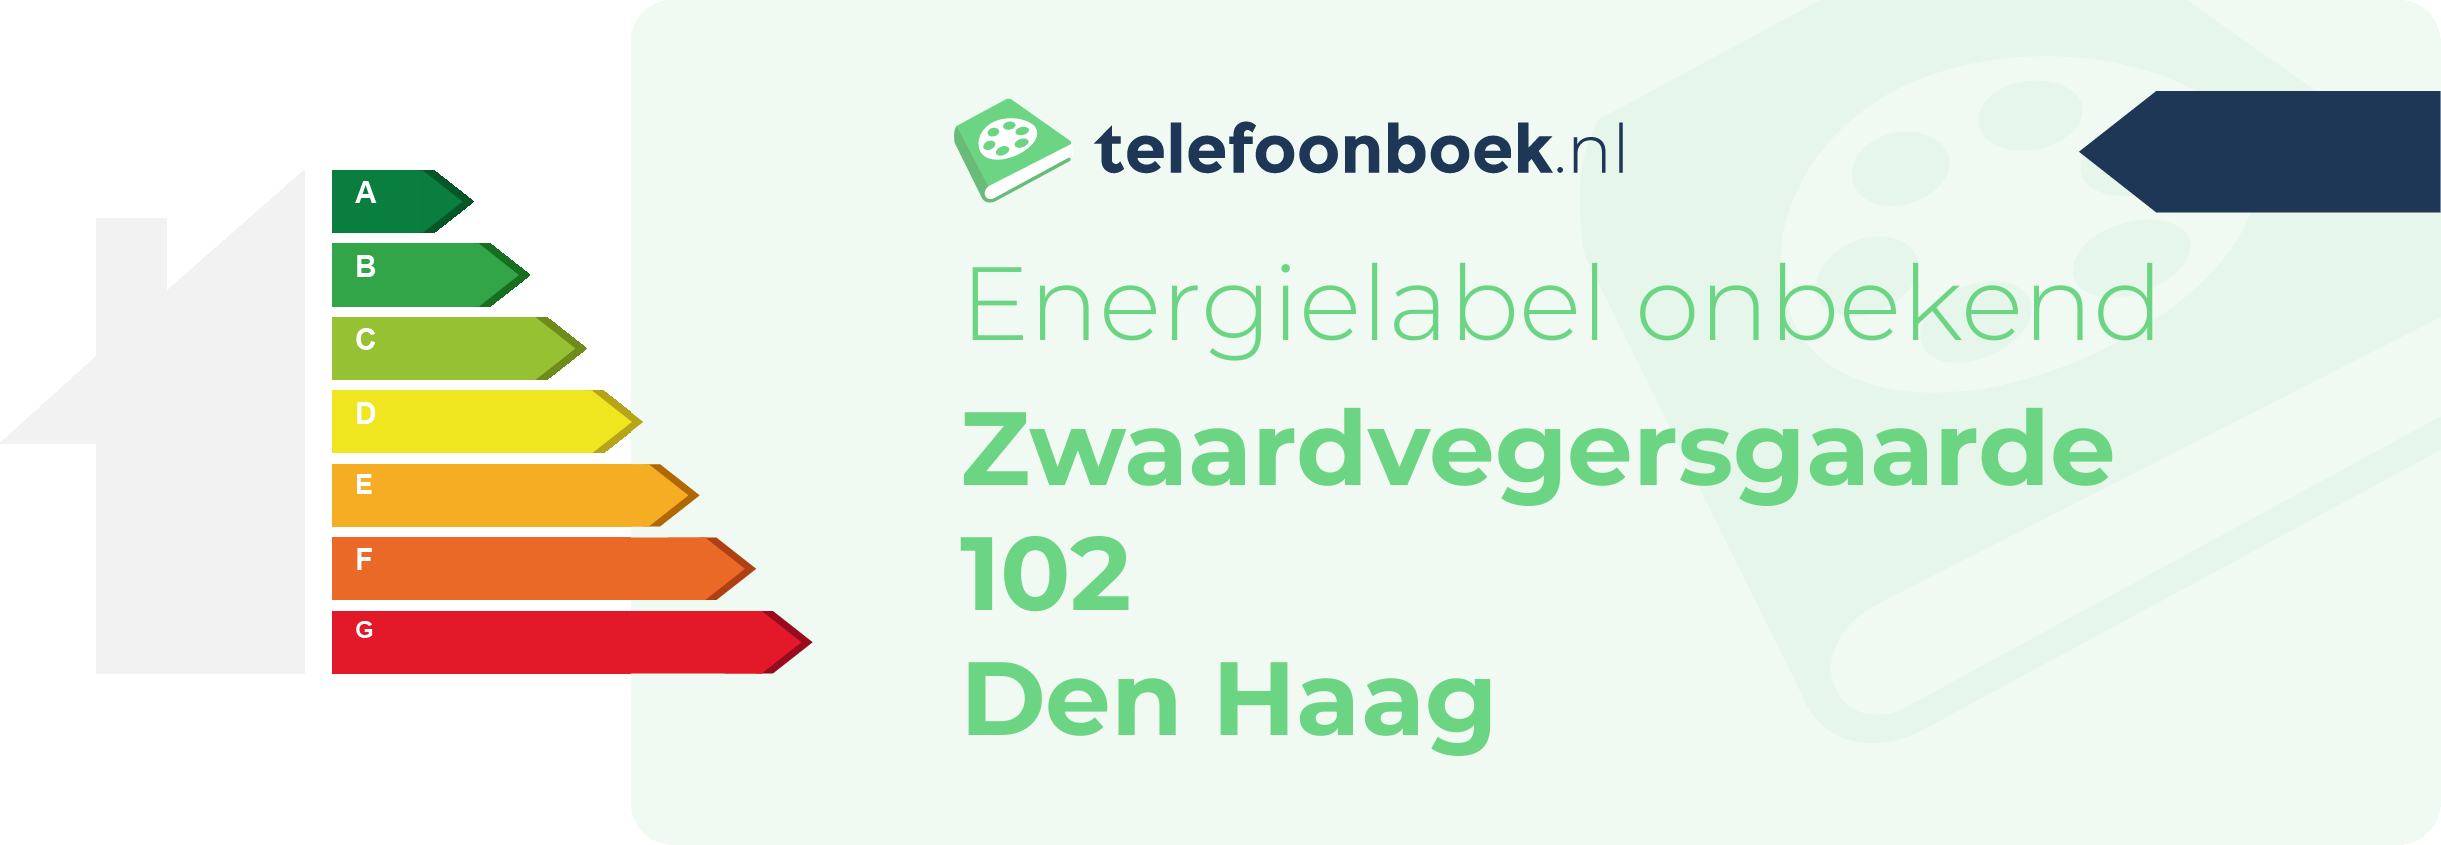 Energielabel Zwaardvegersgaarde 102 Den Haag